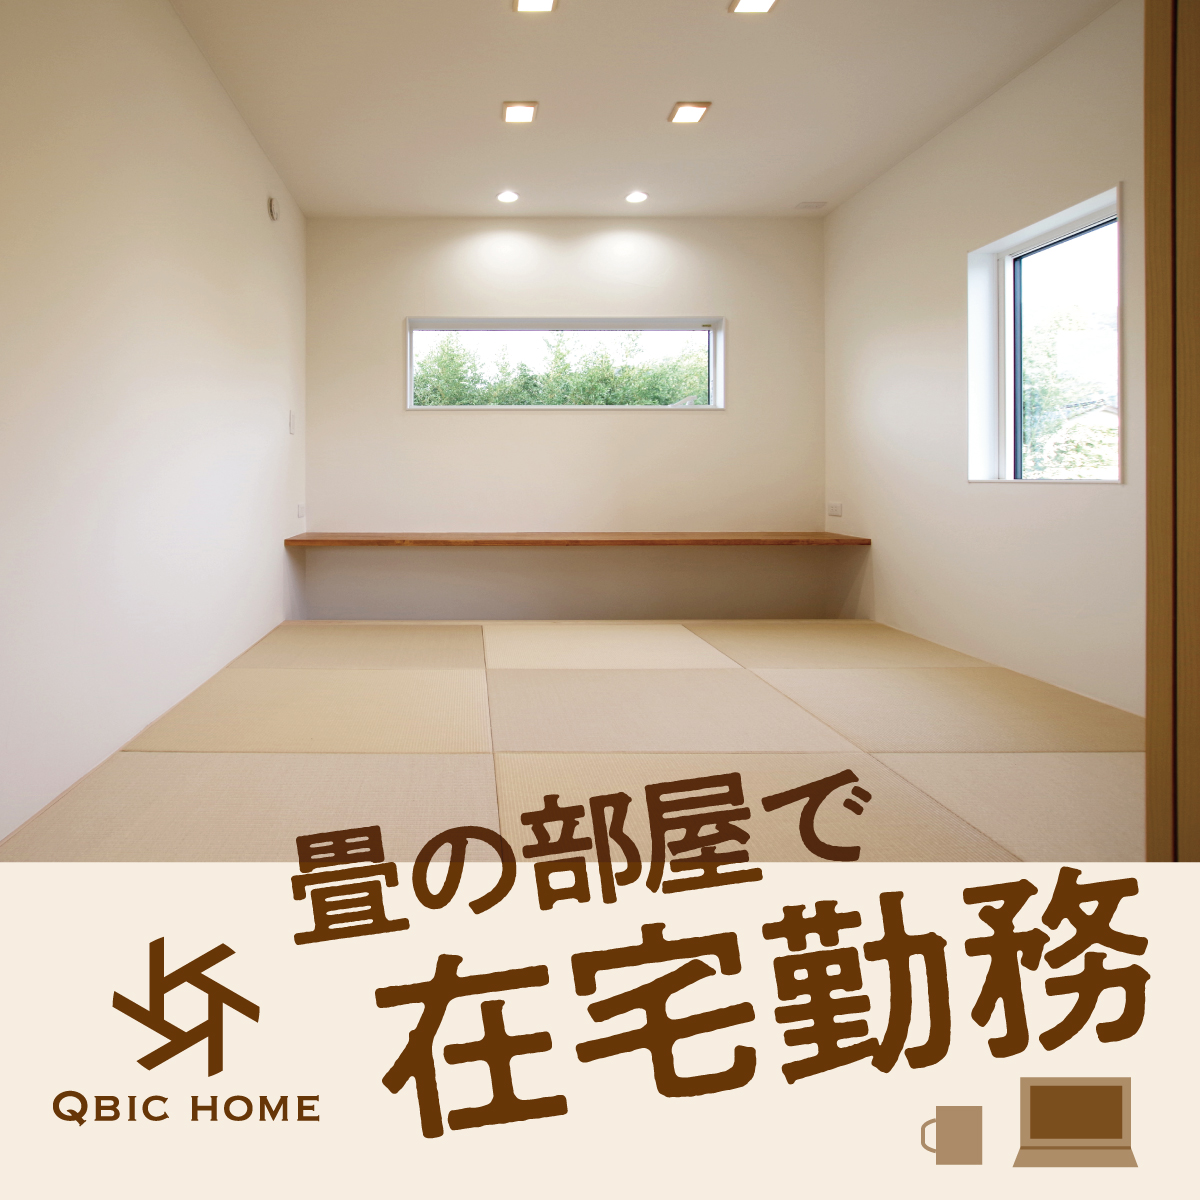 畳の部屋で在宅勤務 ピース島根 島根県の新築情報 地元で愛されている住宅メーカーを紹介します